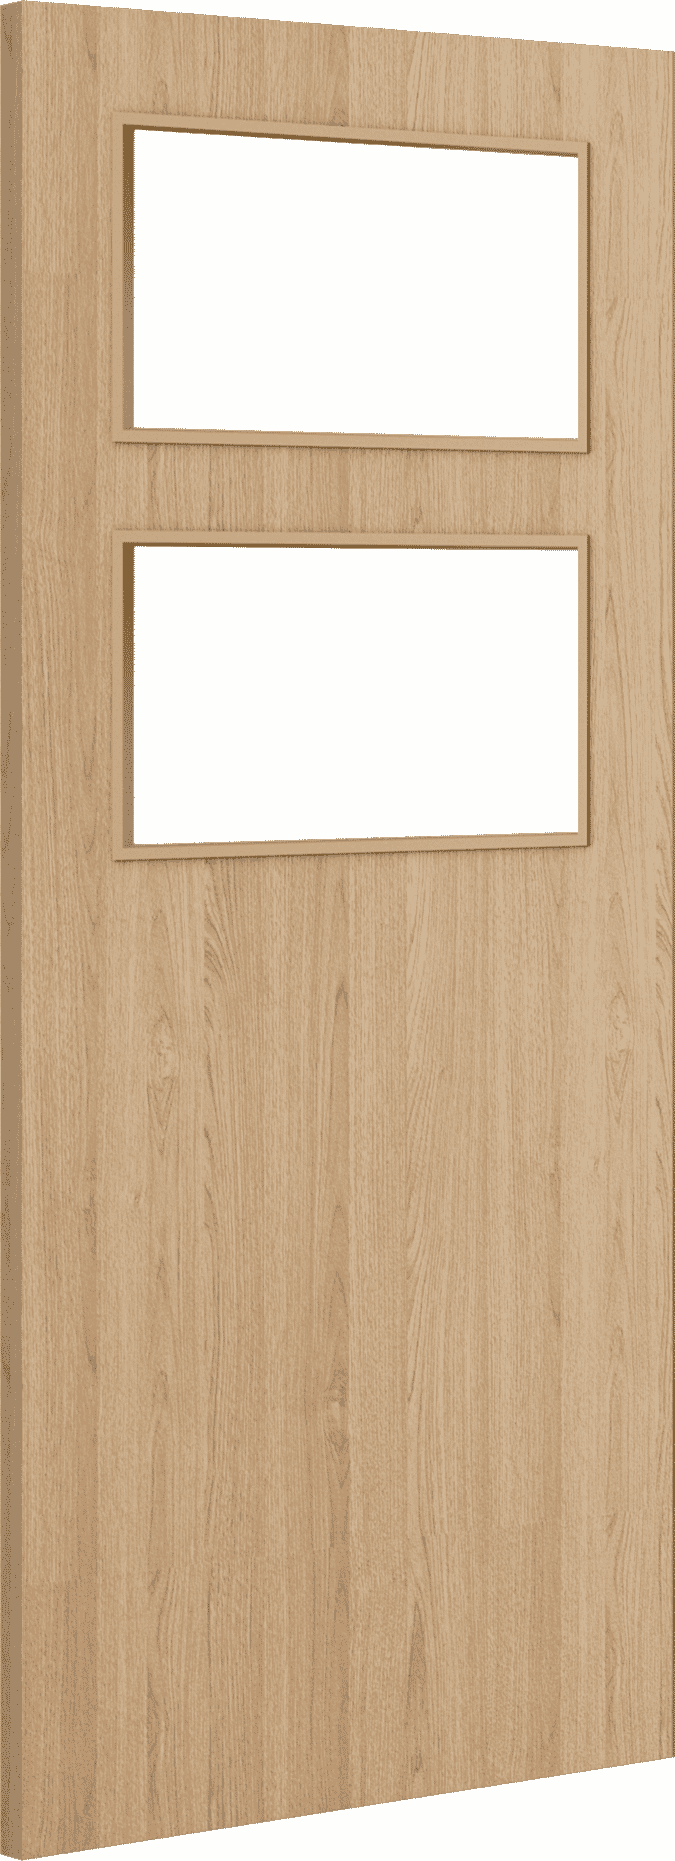 2040mm x 926mm x 44mm Architectural Oak 02 Clear Glazed - Prefinished FD30 Fire Door Blank